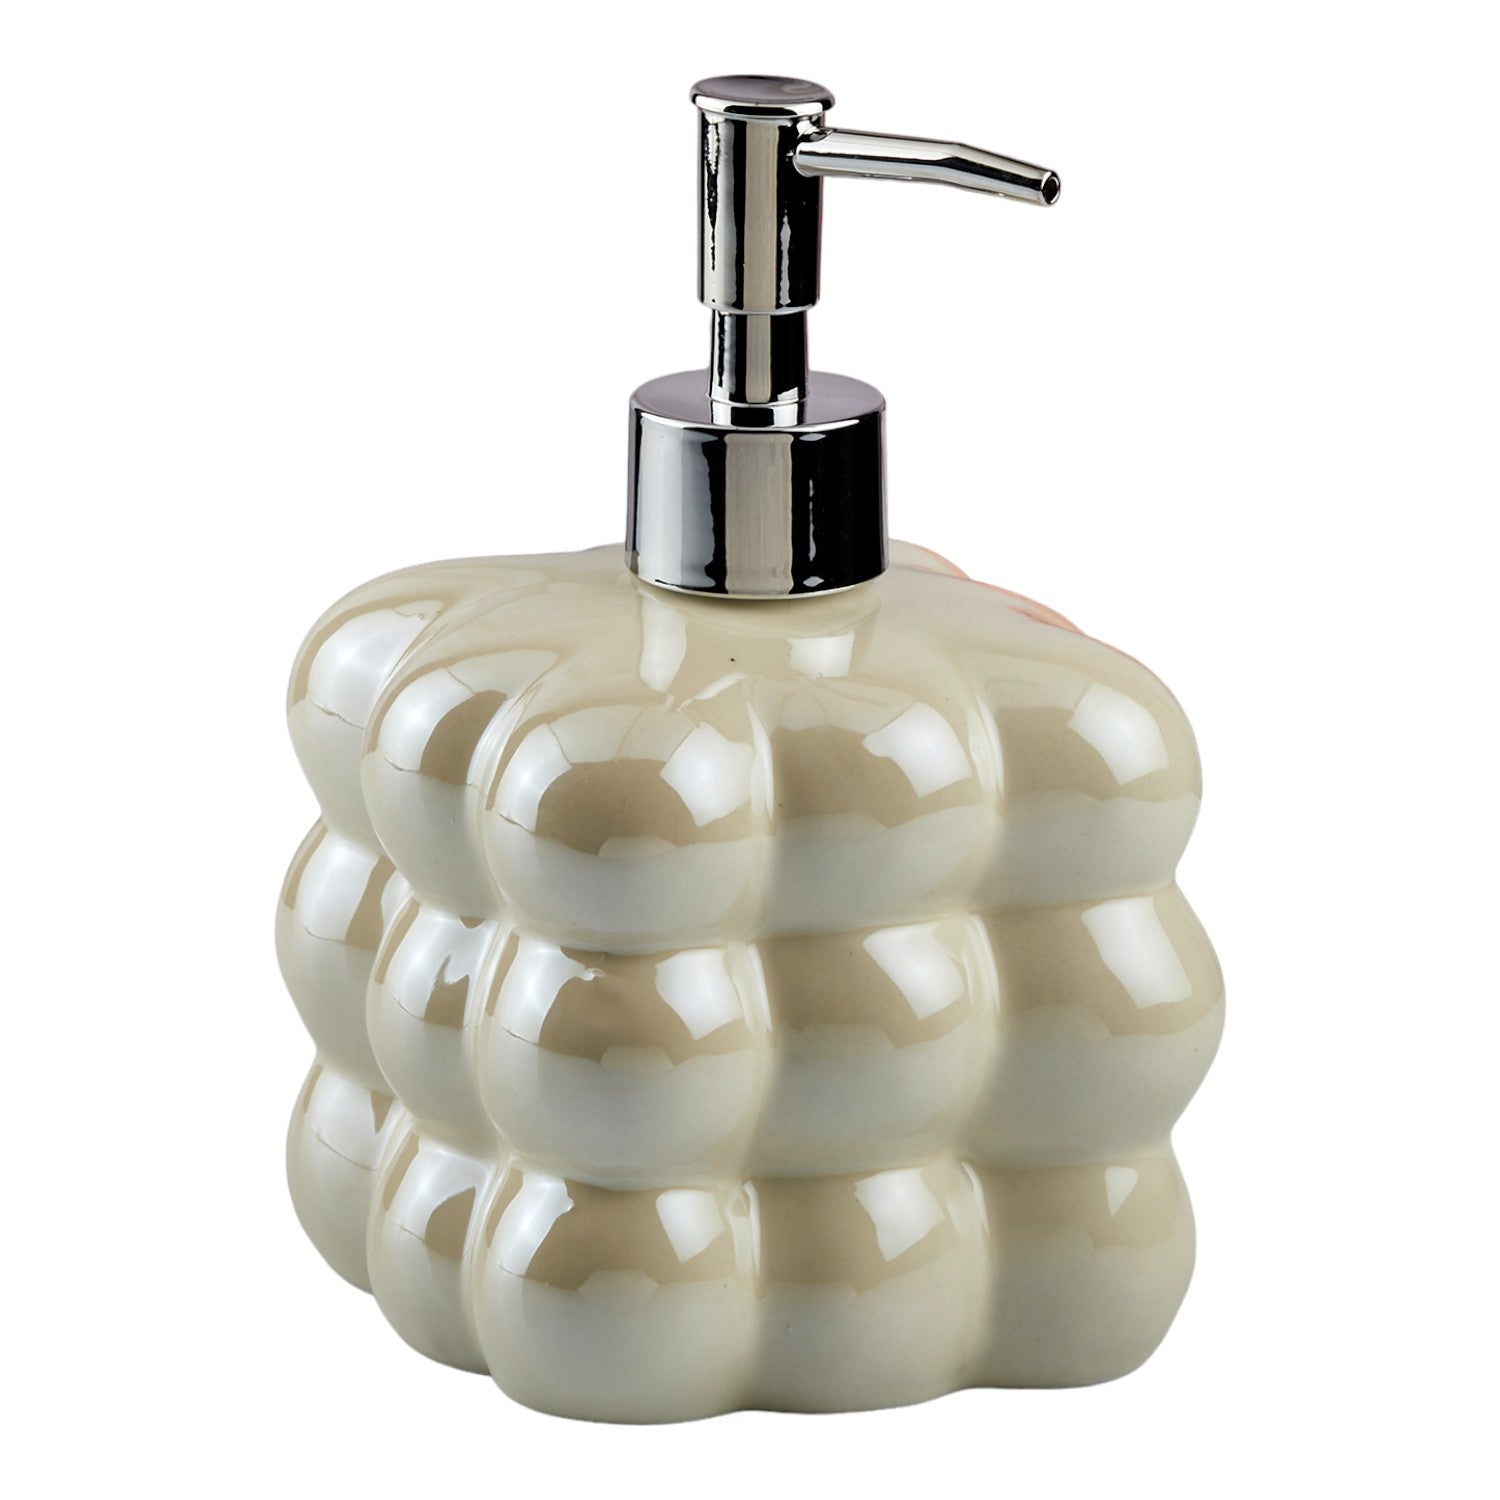 Ceramic Soap Dispenser liquid handwash pump for Bathroom, Set of 1, Beige (10609)